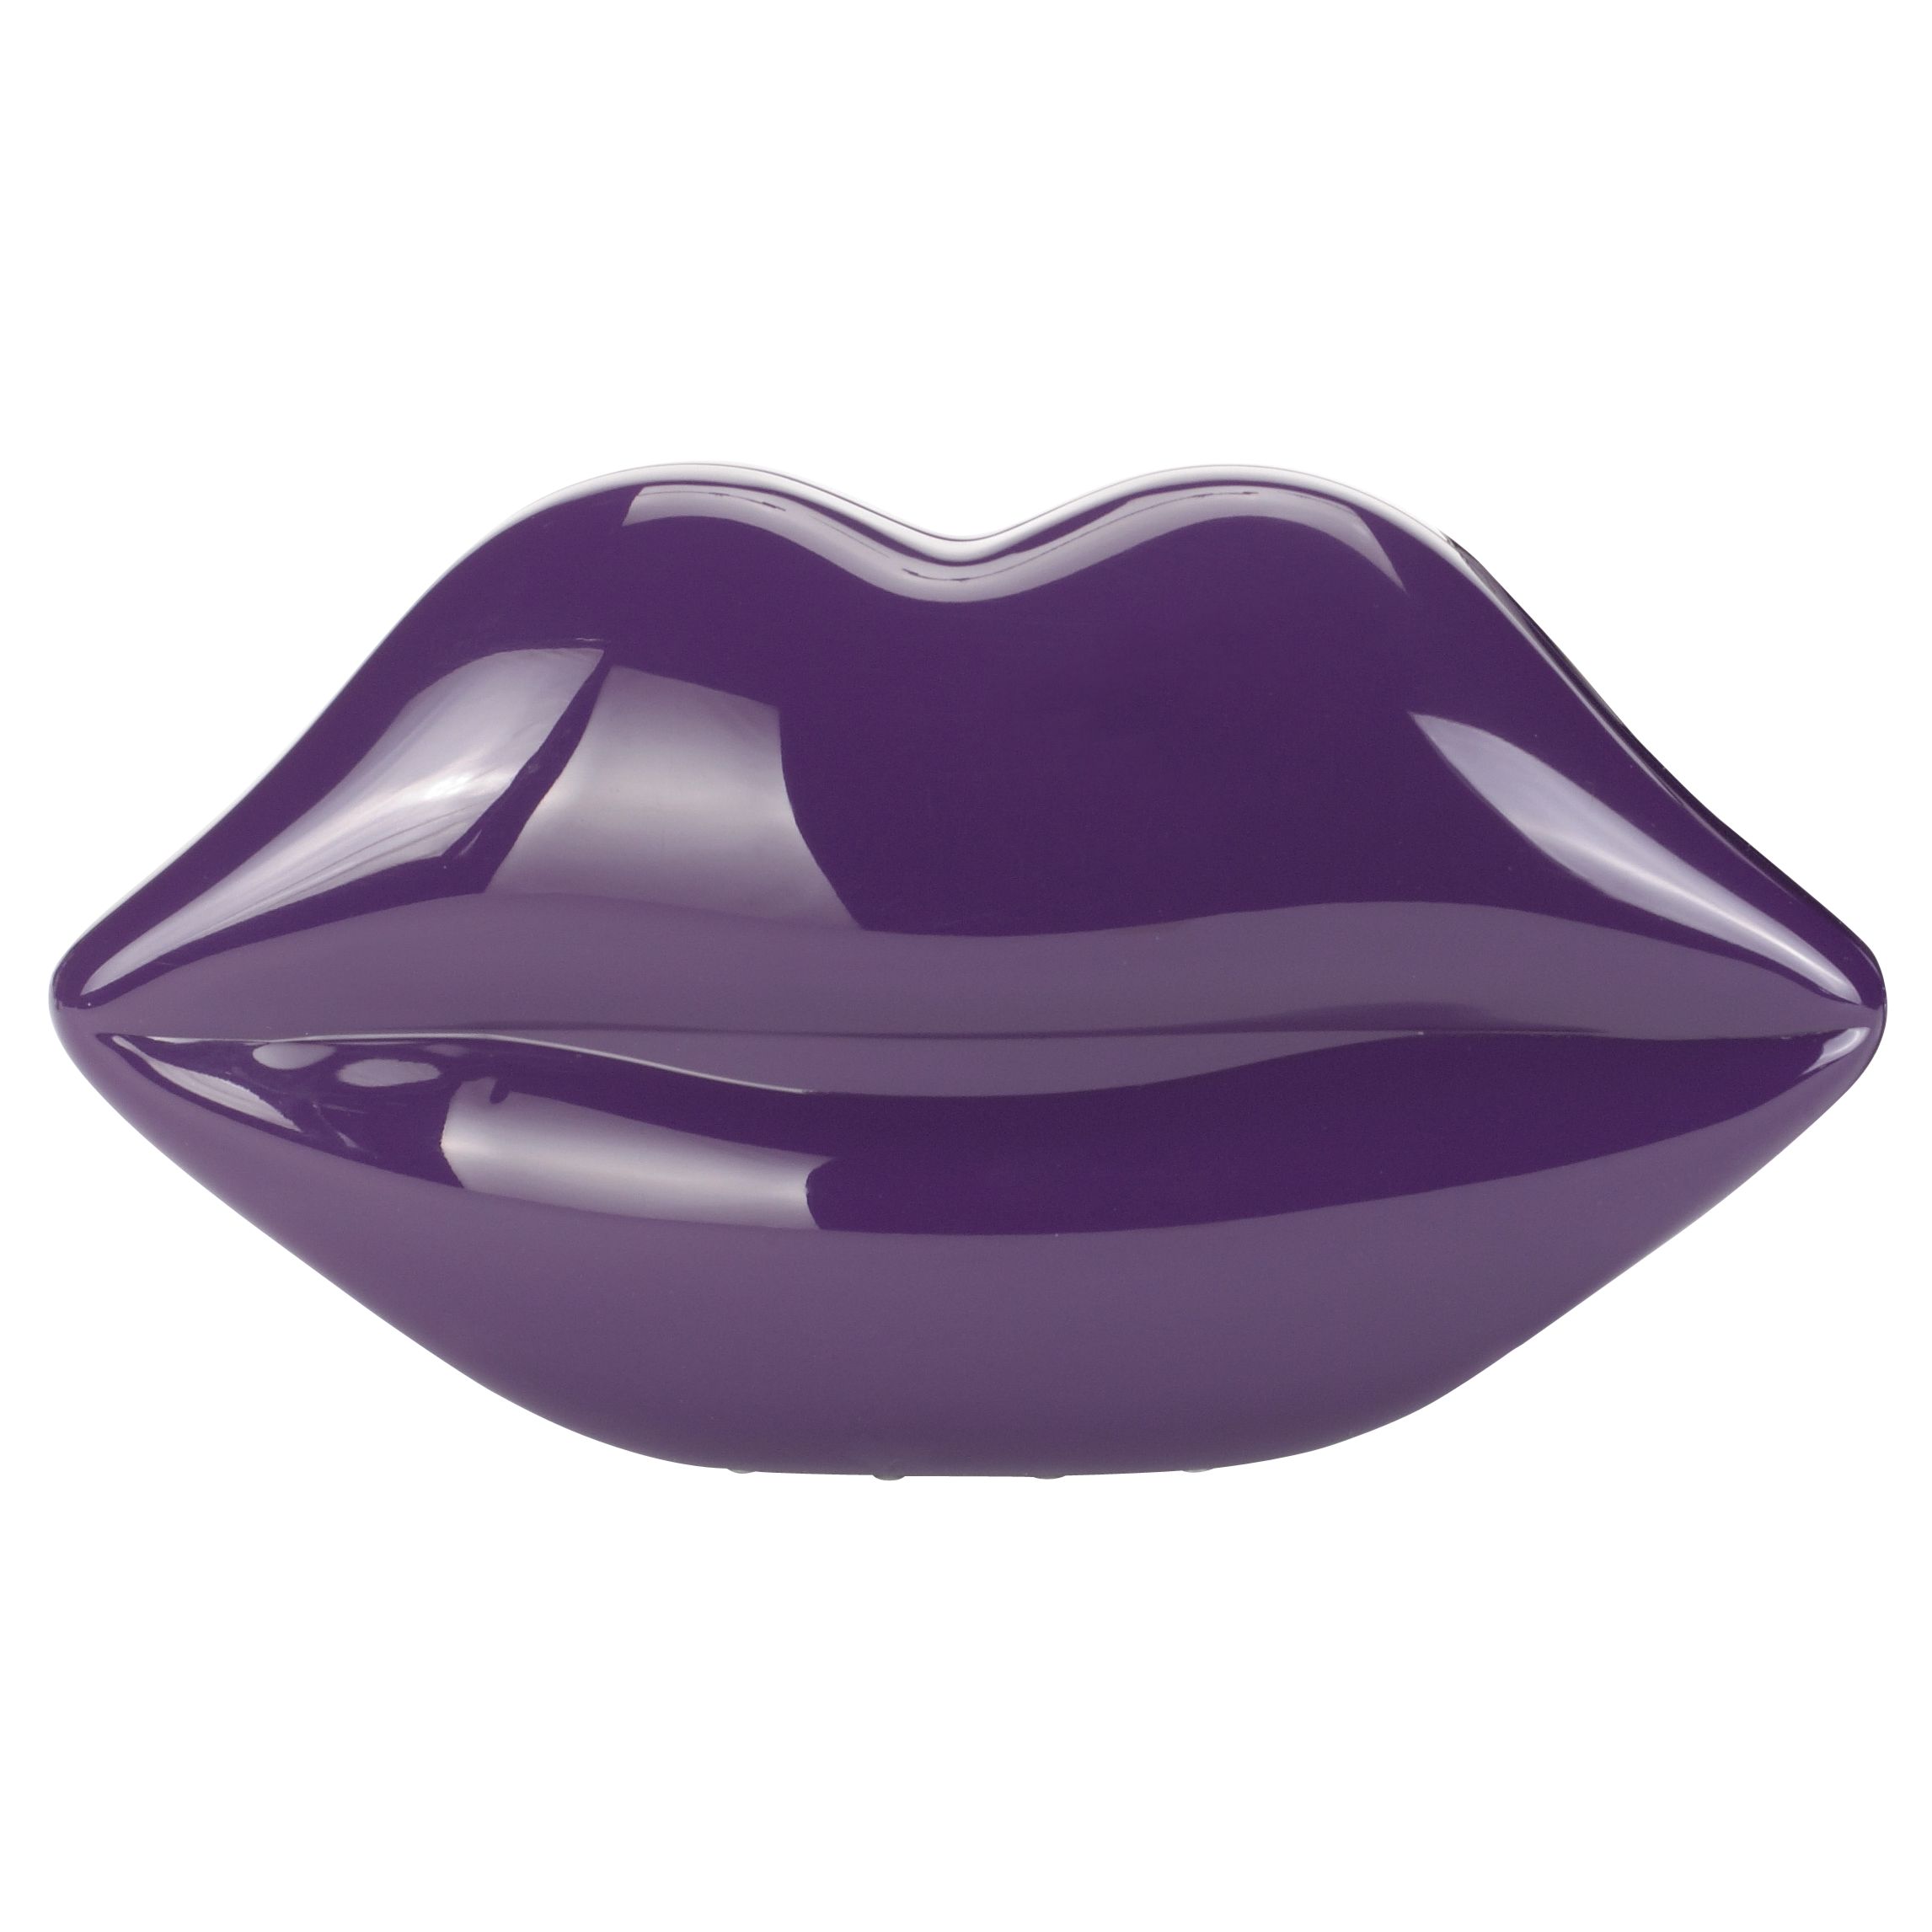 Lulu Guinness Perspex Lips Clutch Handbag, Purple at John Lewis